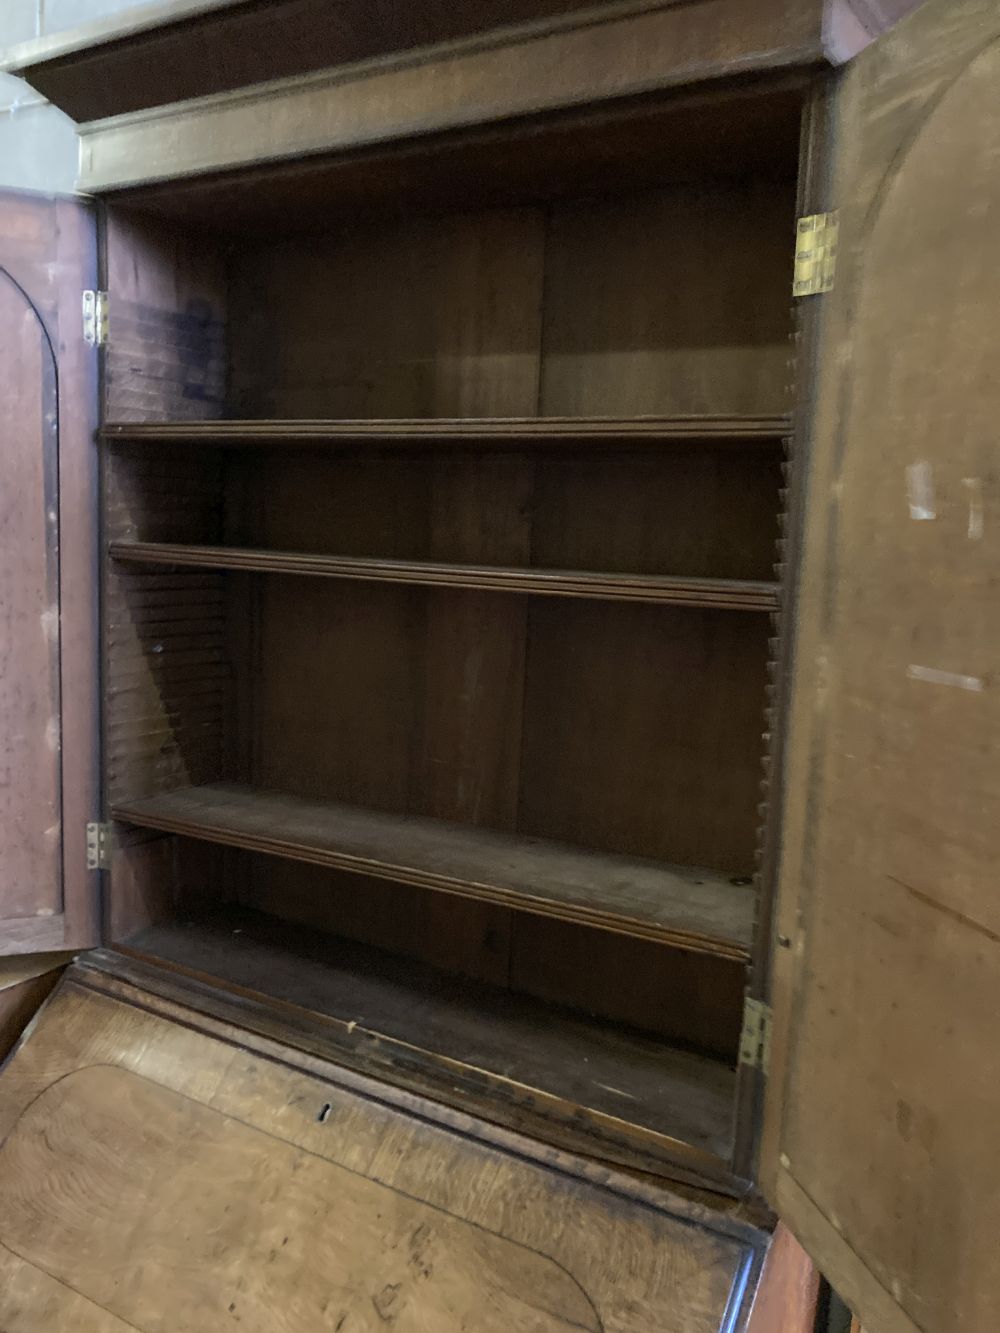 A George III oak bureau bookcase, width 98cm, depth 52cm, height 219cm